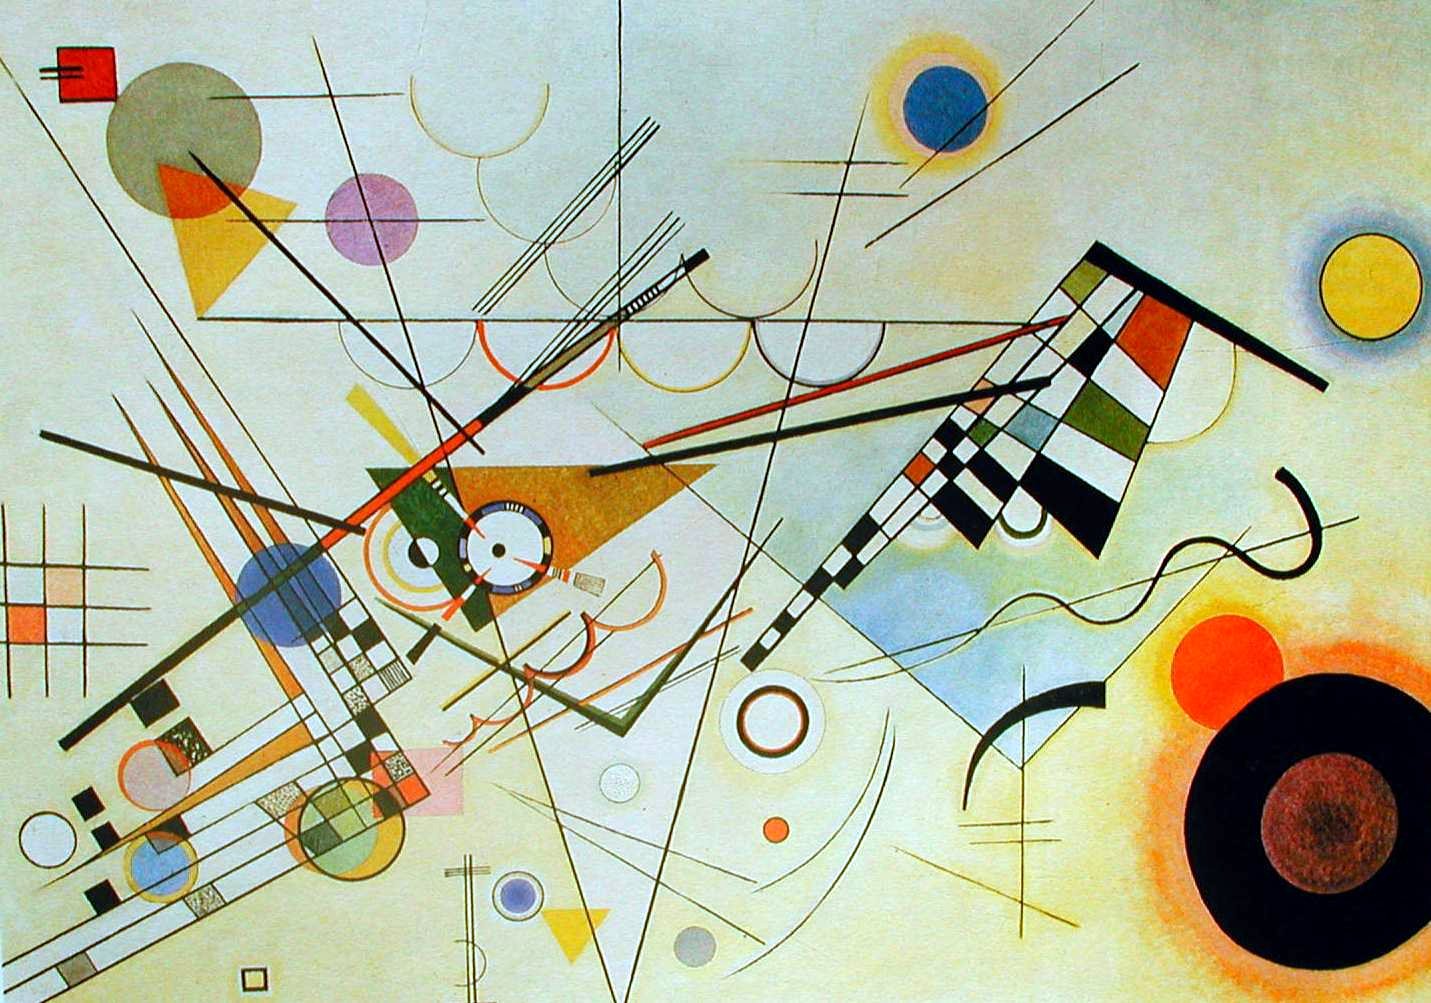 Ölgemälde von Wassily Kandinsky. Elementare geometrische Elemente (Kreise, Dreiecke, Quadrate, Linien) auf einer hellen Grundfläche. 